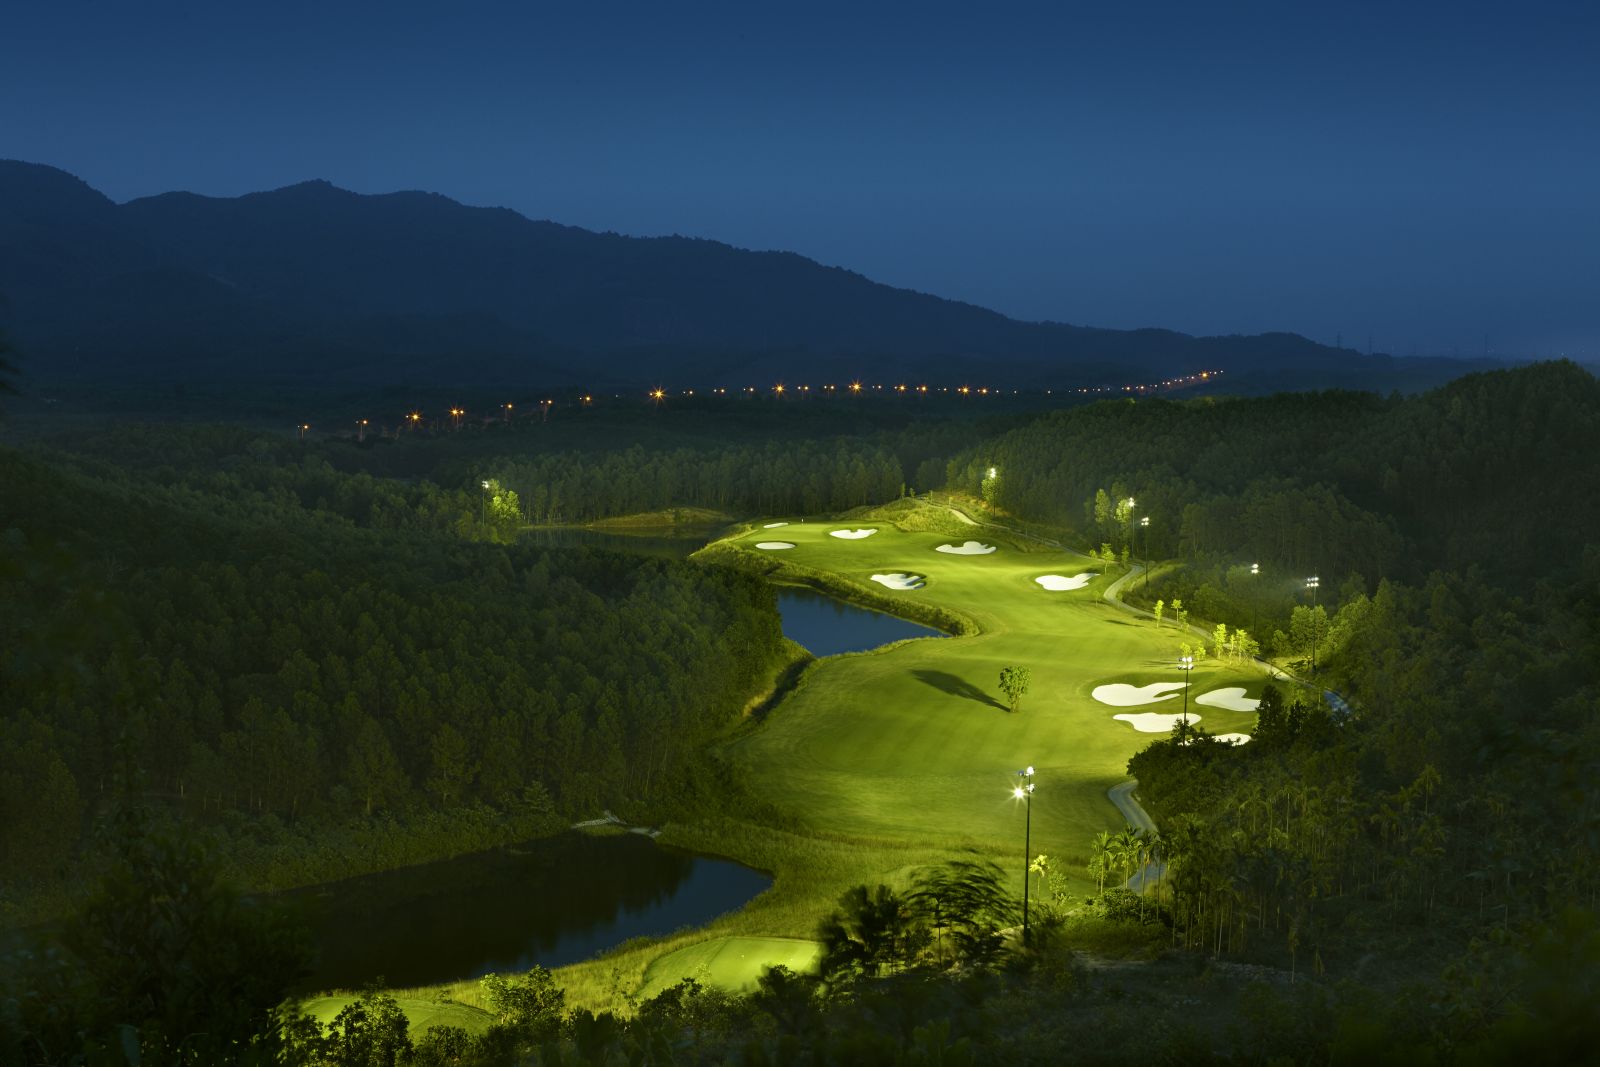 Ba Na Hills Golf Club với hệ thống chiếu sáng ban đêm hiện đại